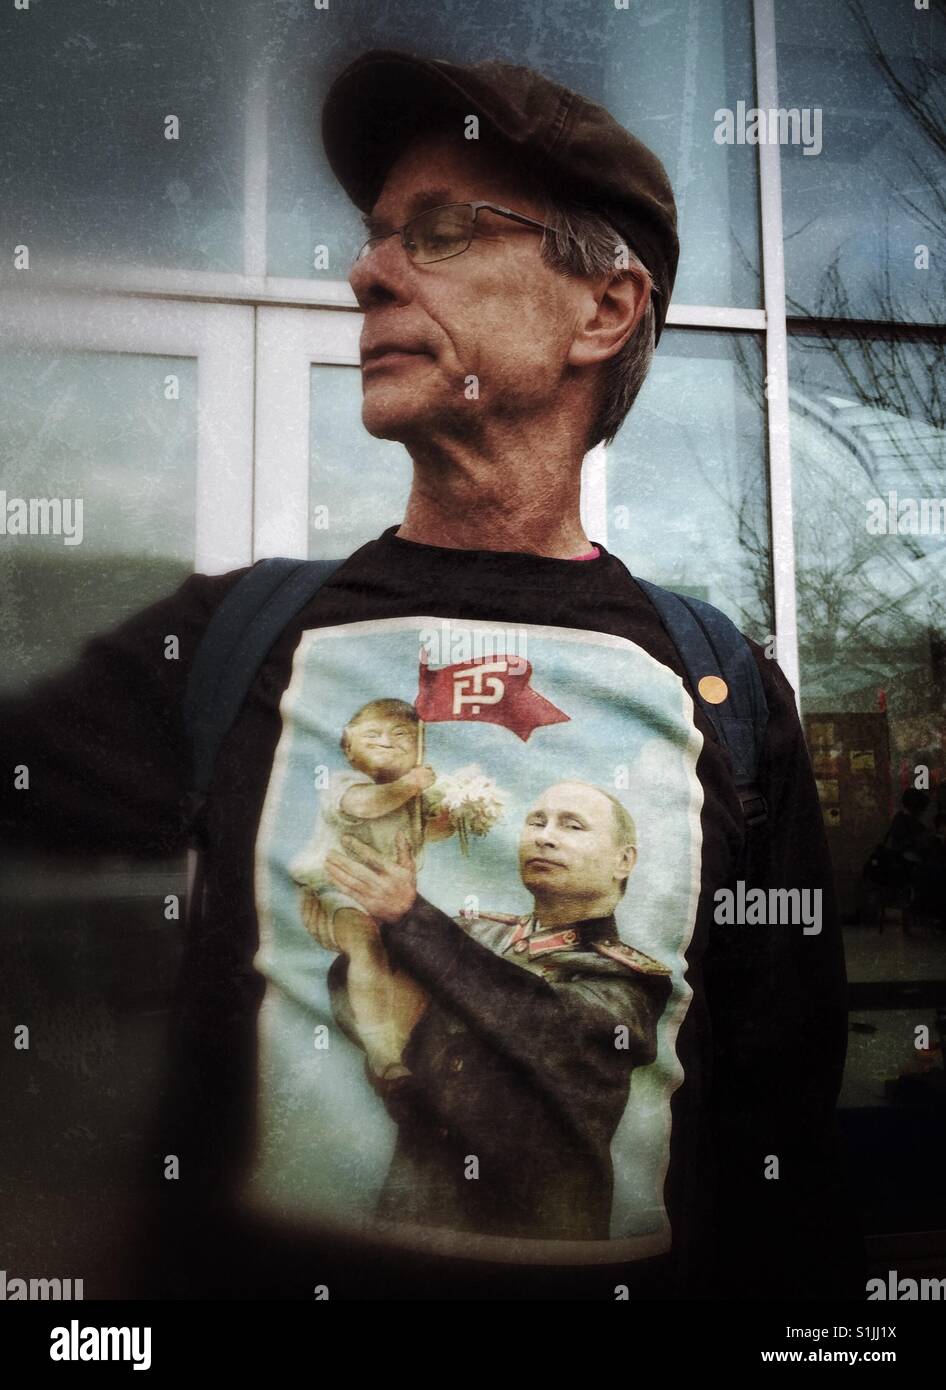 Hombres caucásicos de mediana edad con un gorro y una camiseta con la caricatura de Putin la celebración de bebé en sus manos Trump Foto de stock